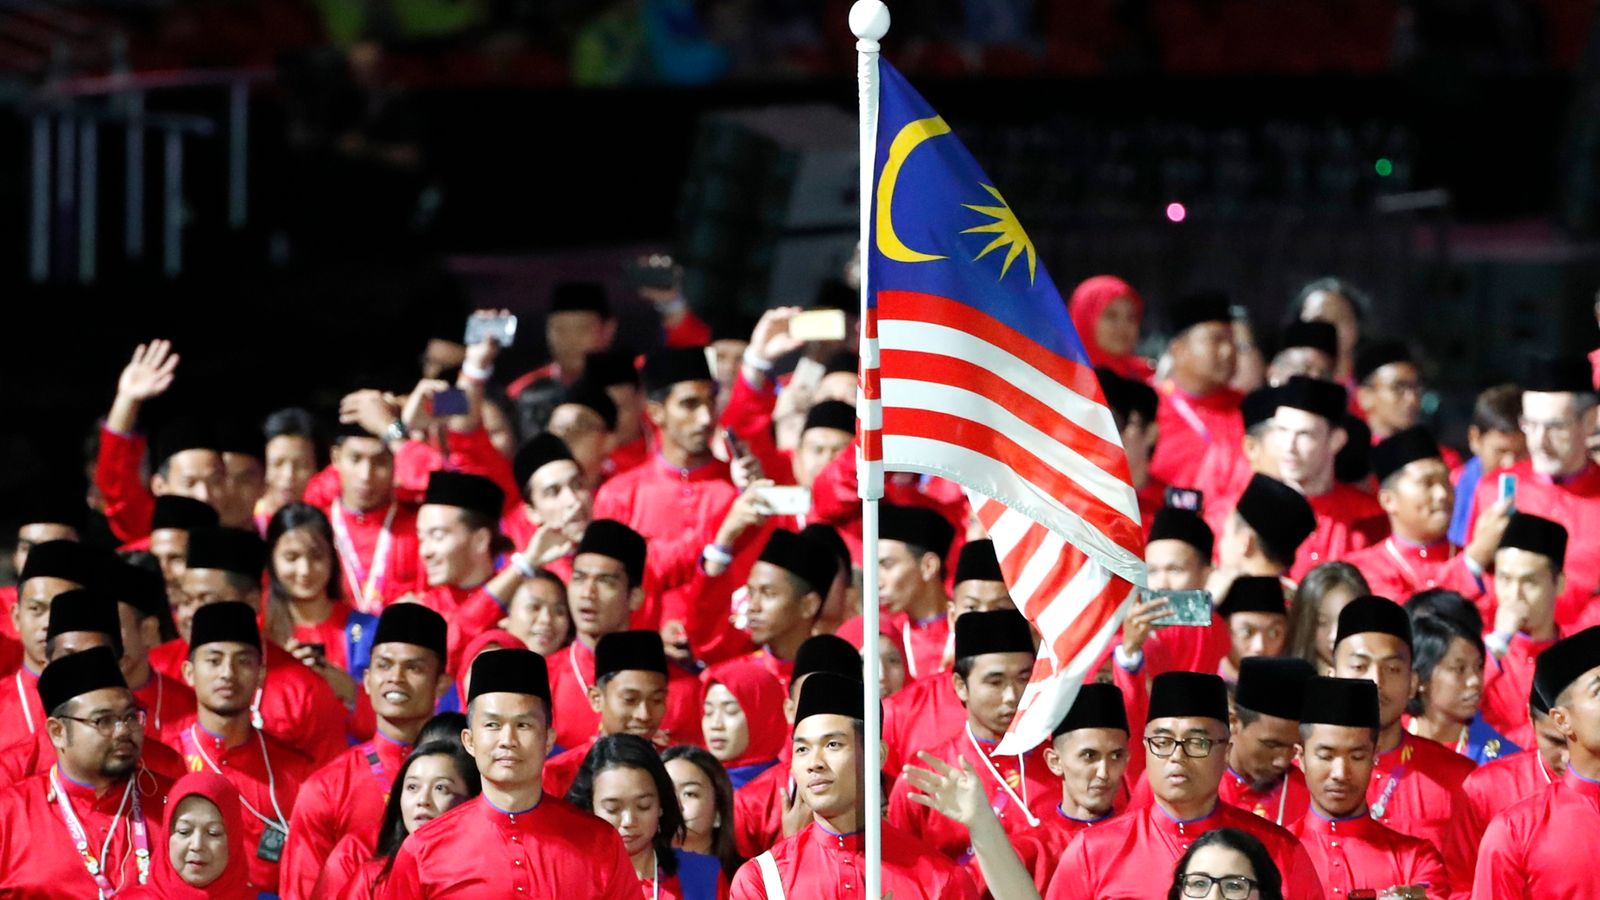 马来西亚成为第二个拒绝举办 2026 年英联邦运动会的国家世界新闻